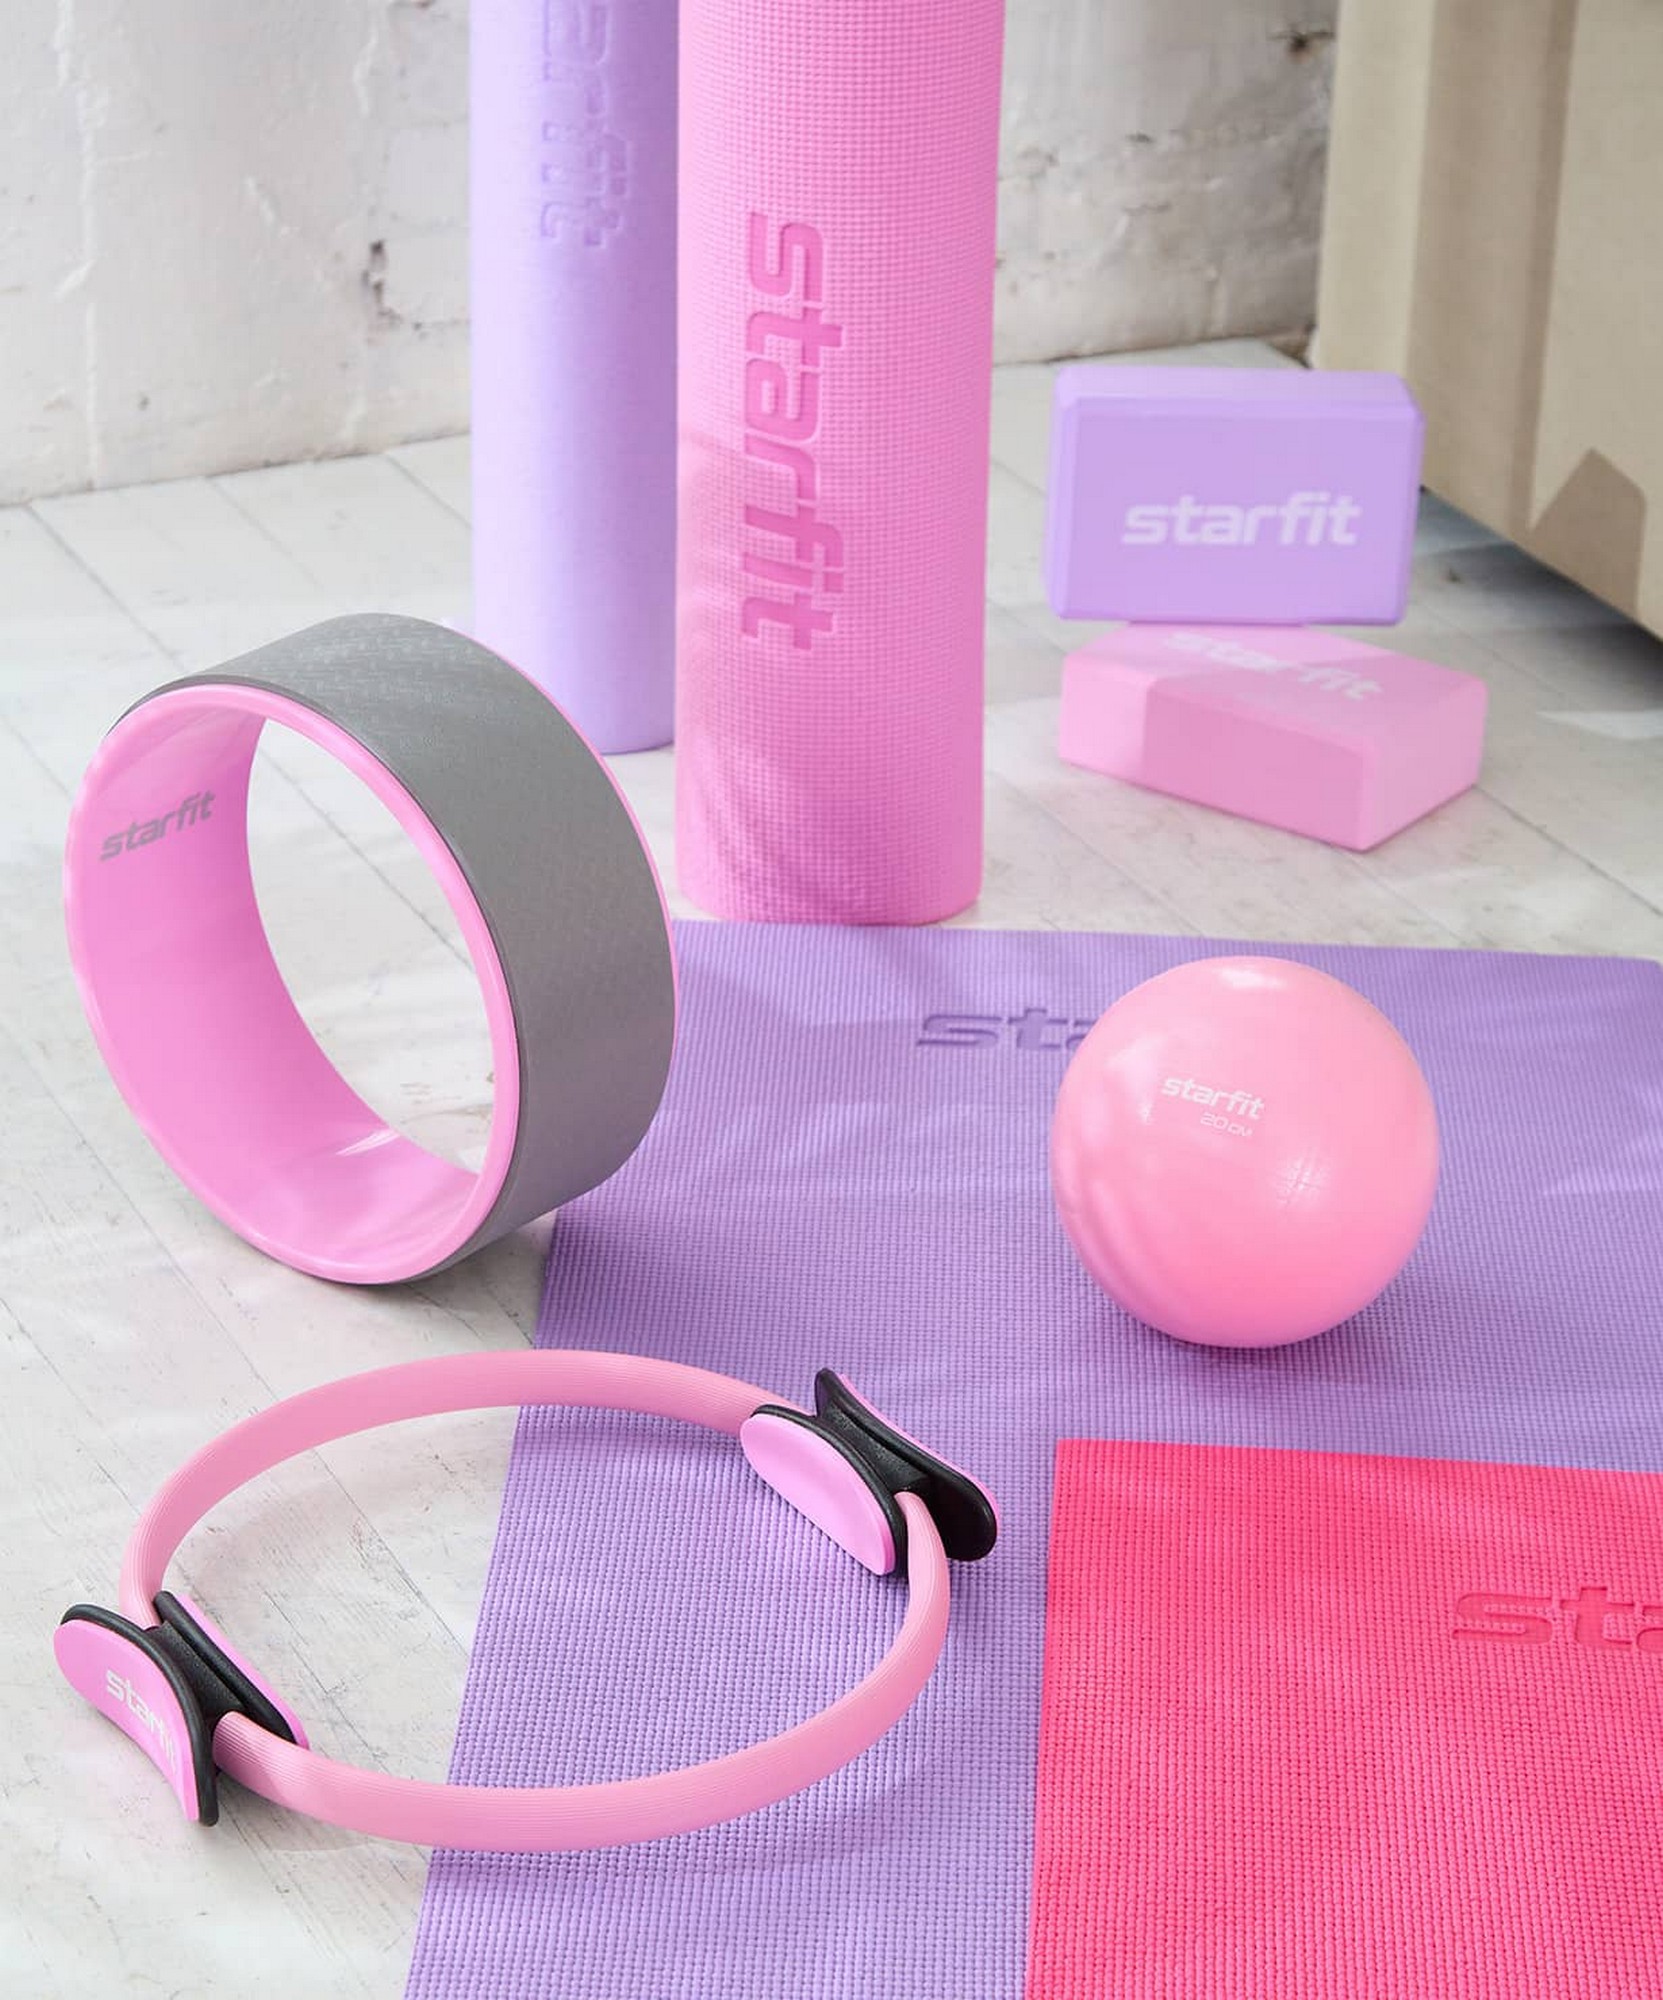 Колесо для йоги Star Fit d32см YW-101 розовый пастель\серый 1663_2000